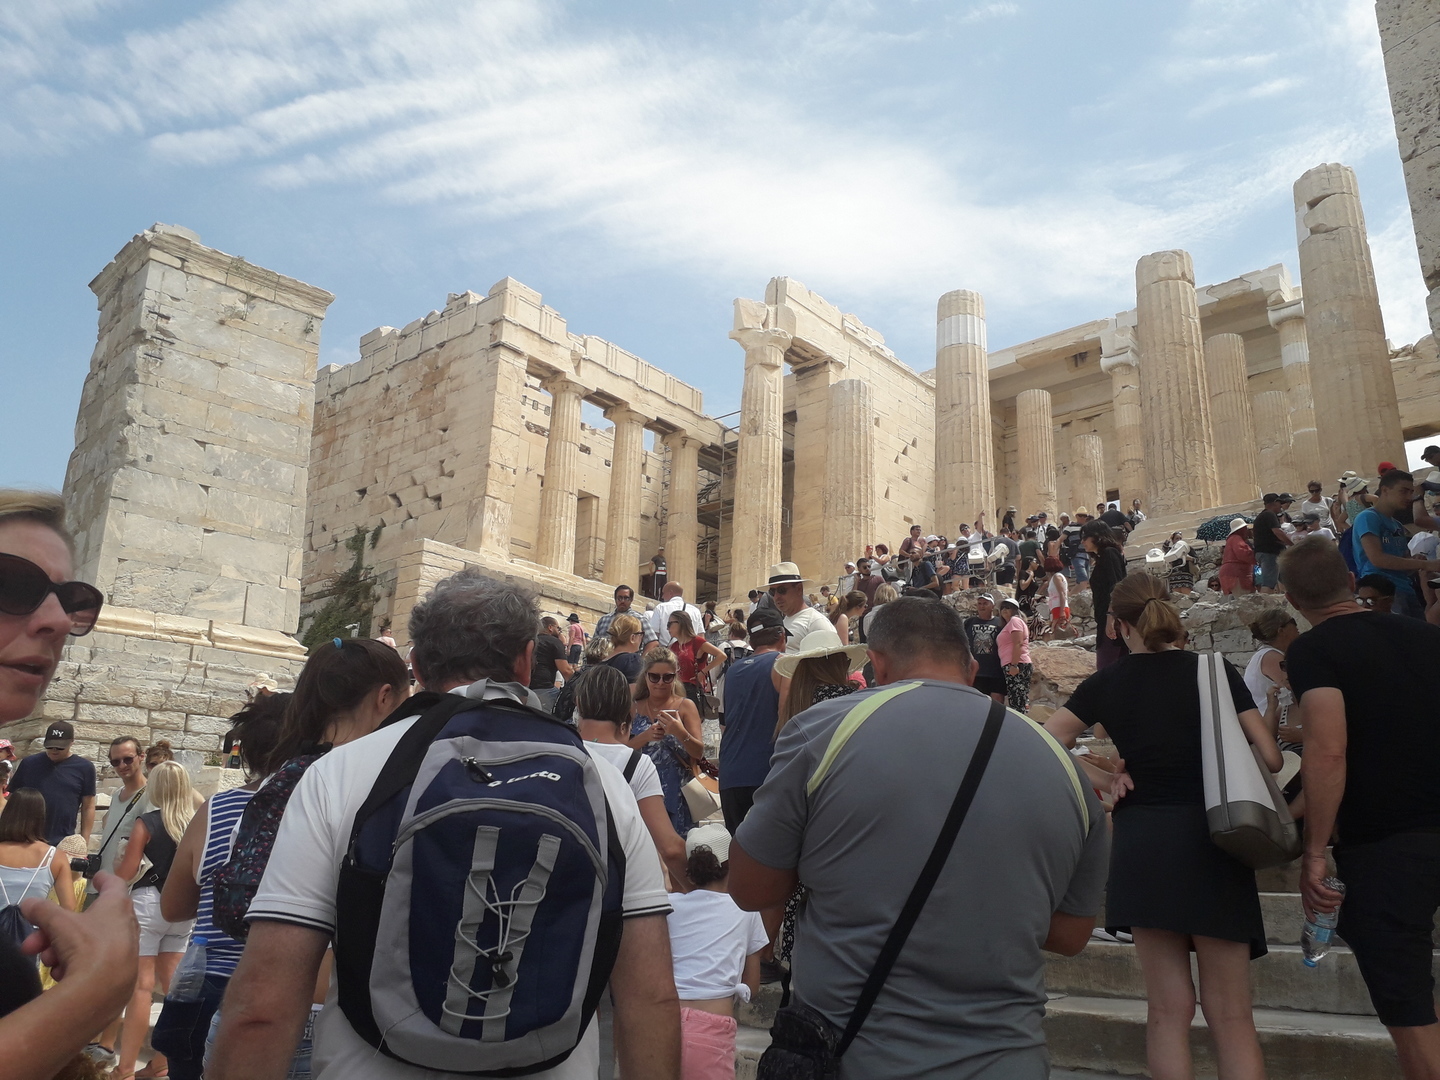 Image 25 : Sommet de l'Acropole avec foule sur les marches finales